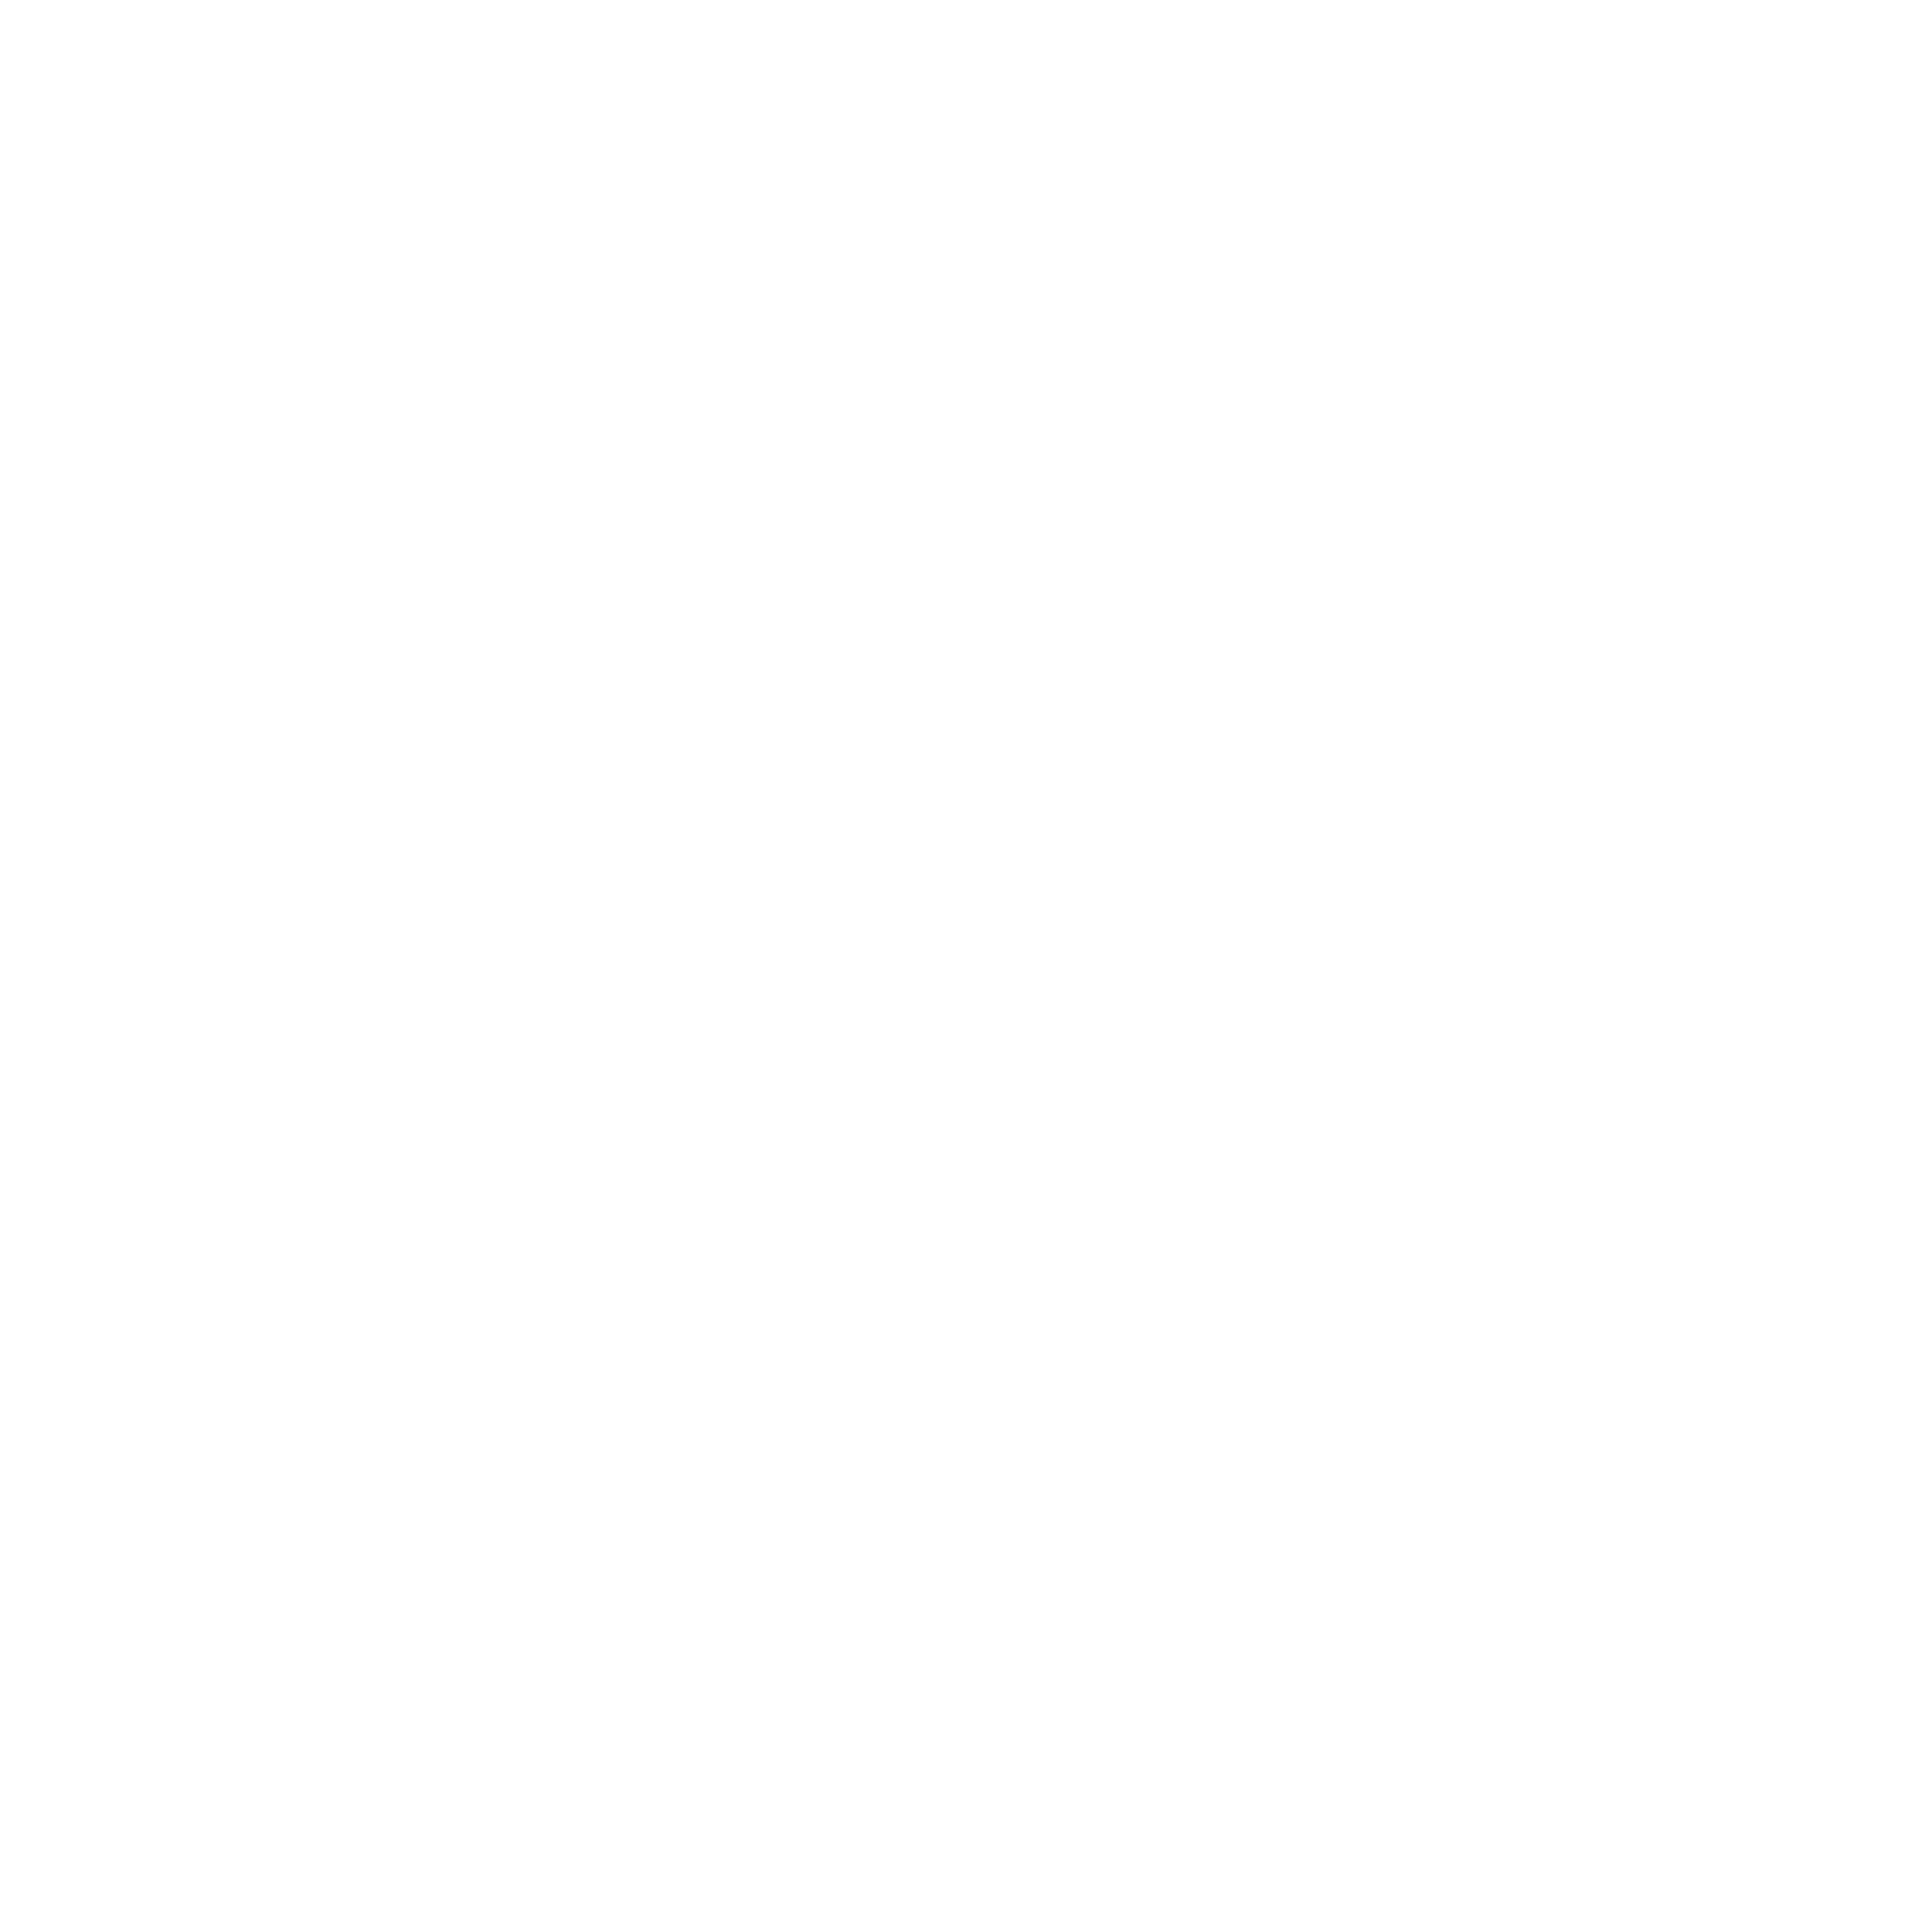 Con-tactoinmigrante